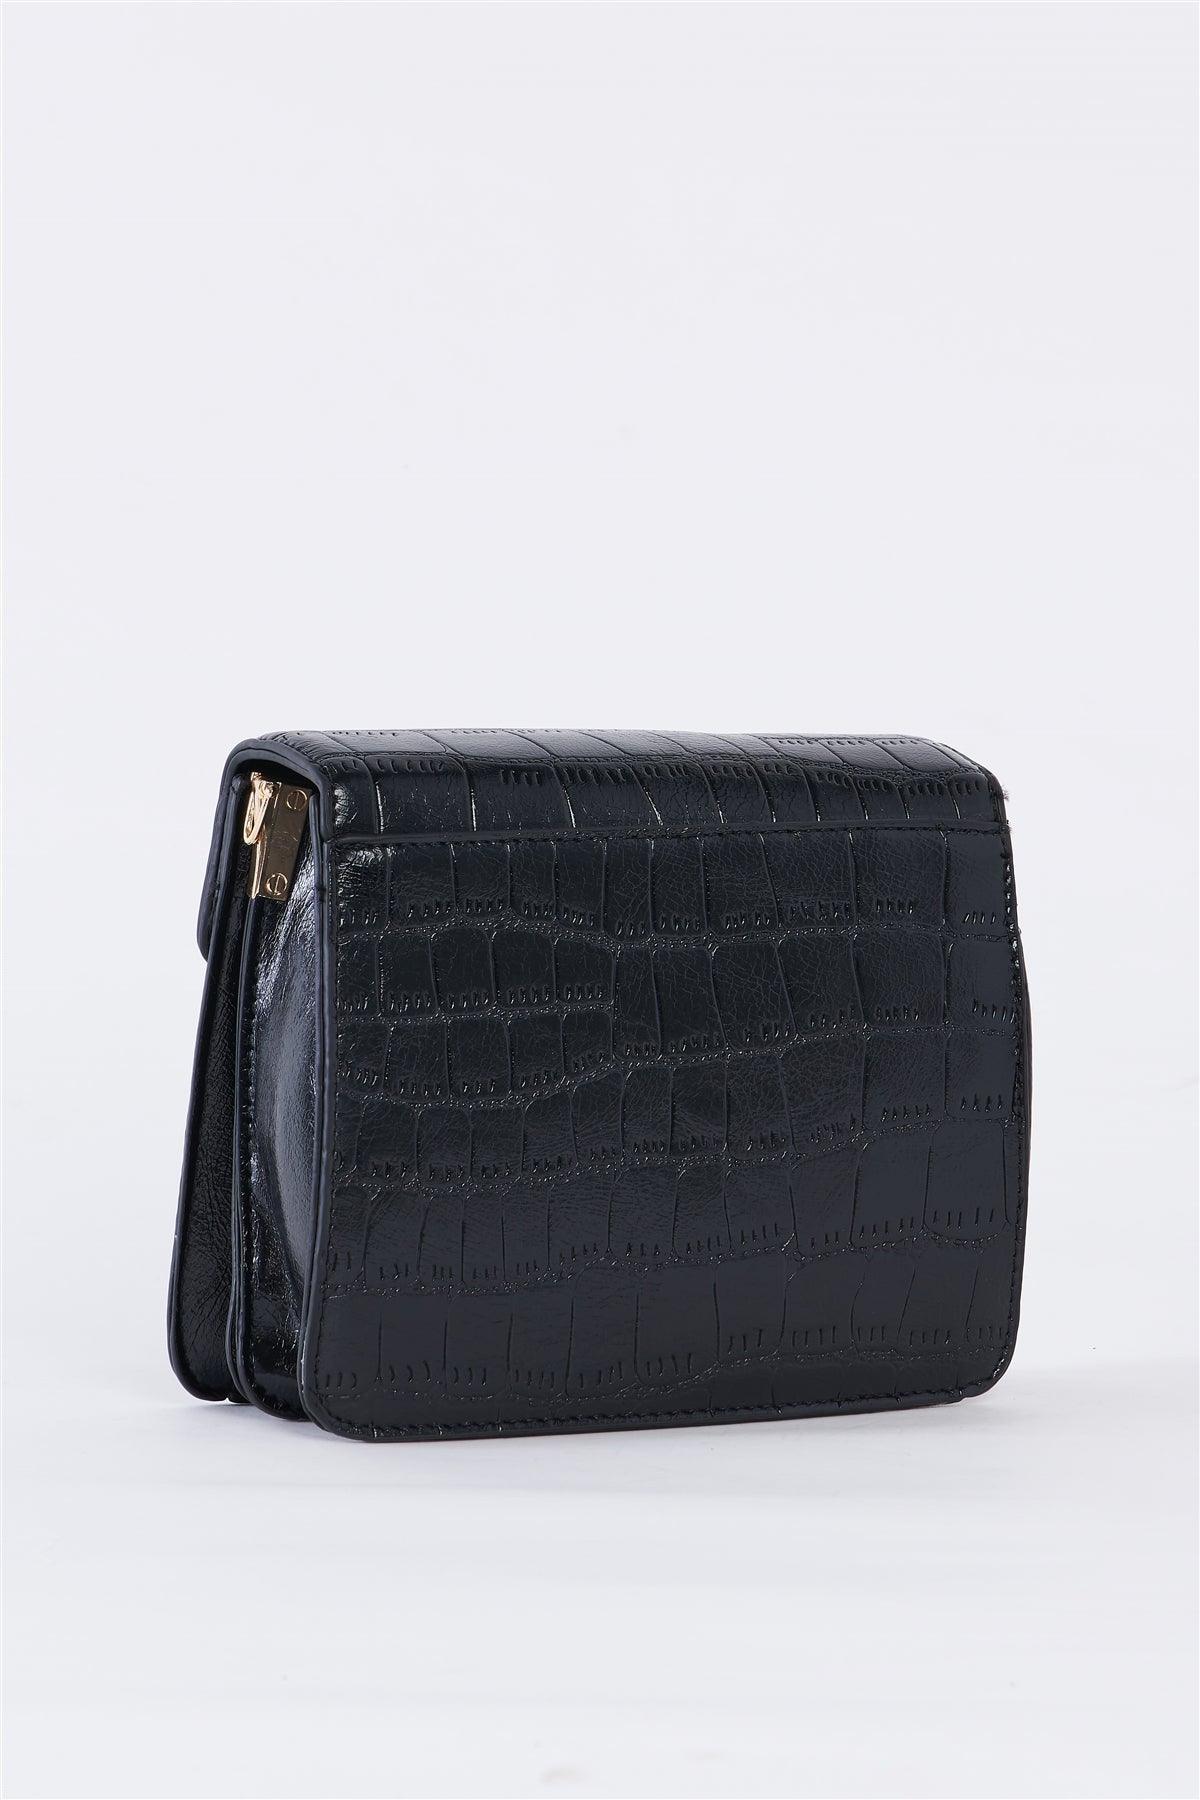 Black Alligator Vegan Leather Square Shoulder Bag /3 Bags